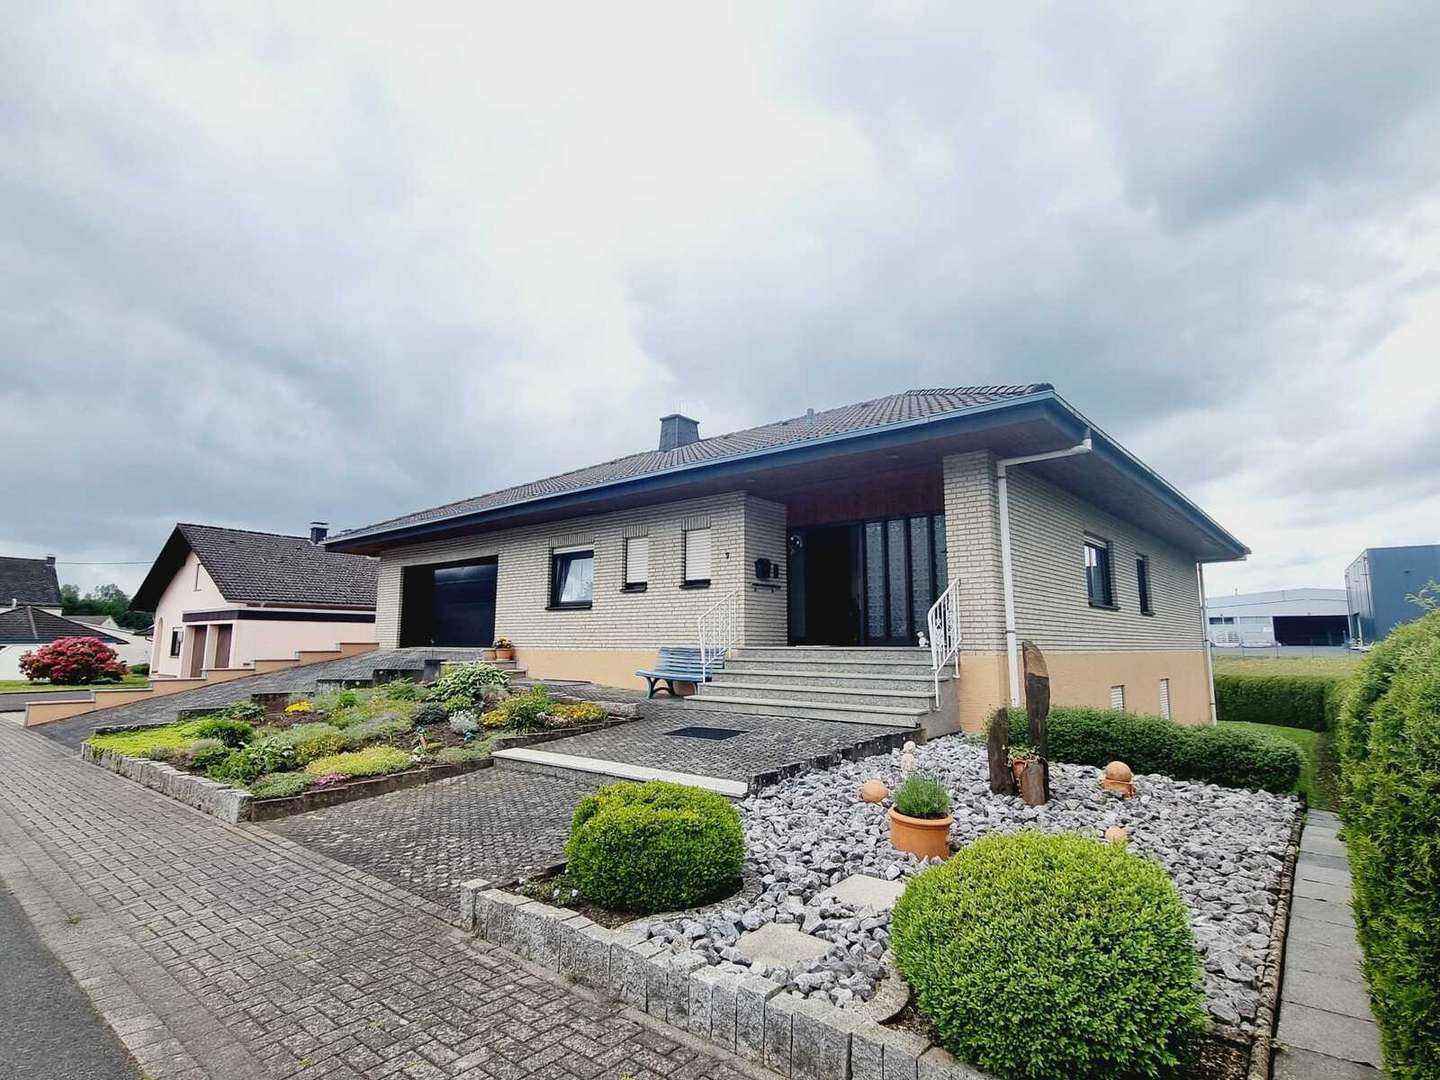 Haus mit Vorgarten - Bungalow in 56459 Winnen mit 154m² kaufen